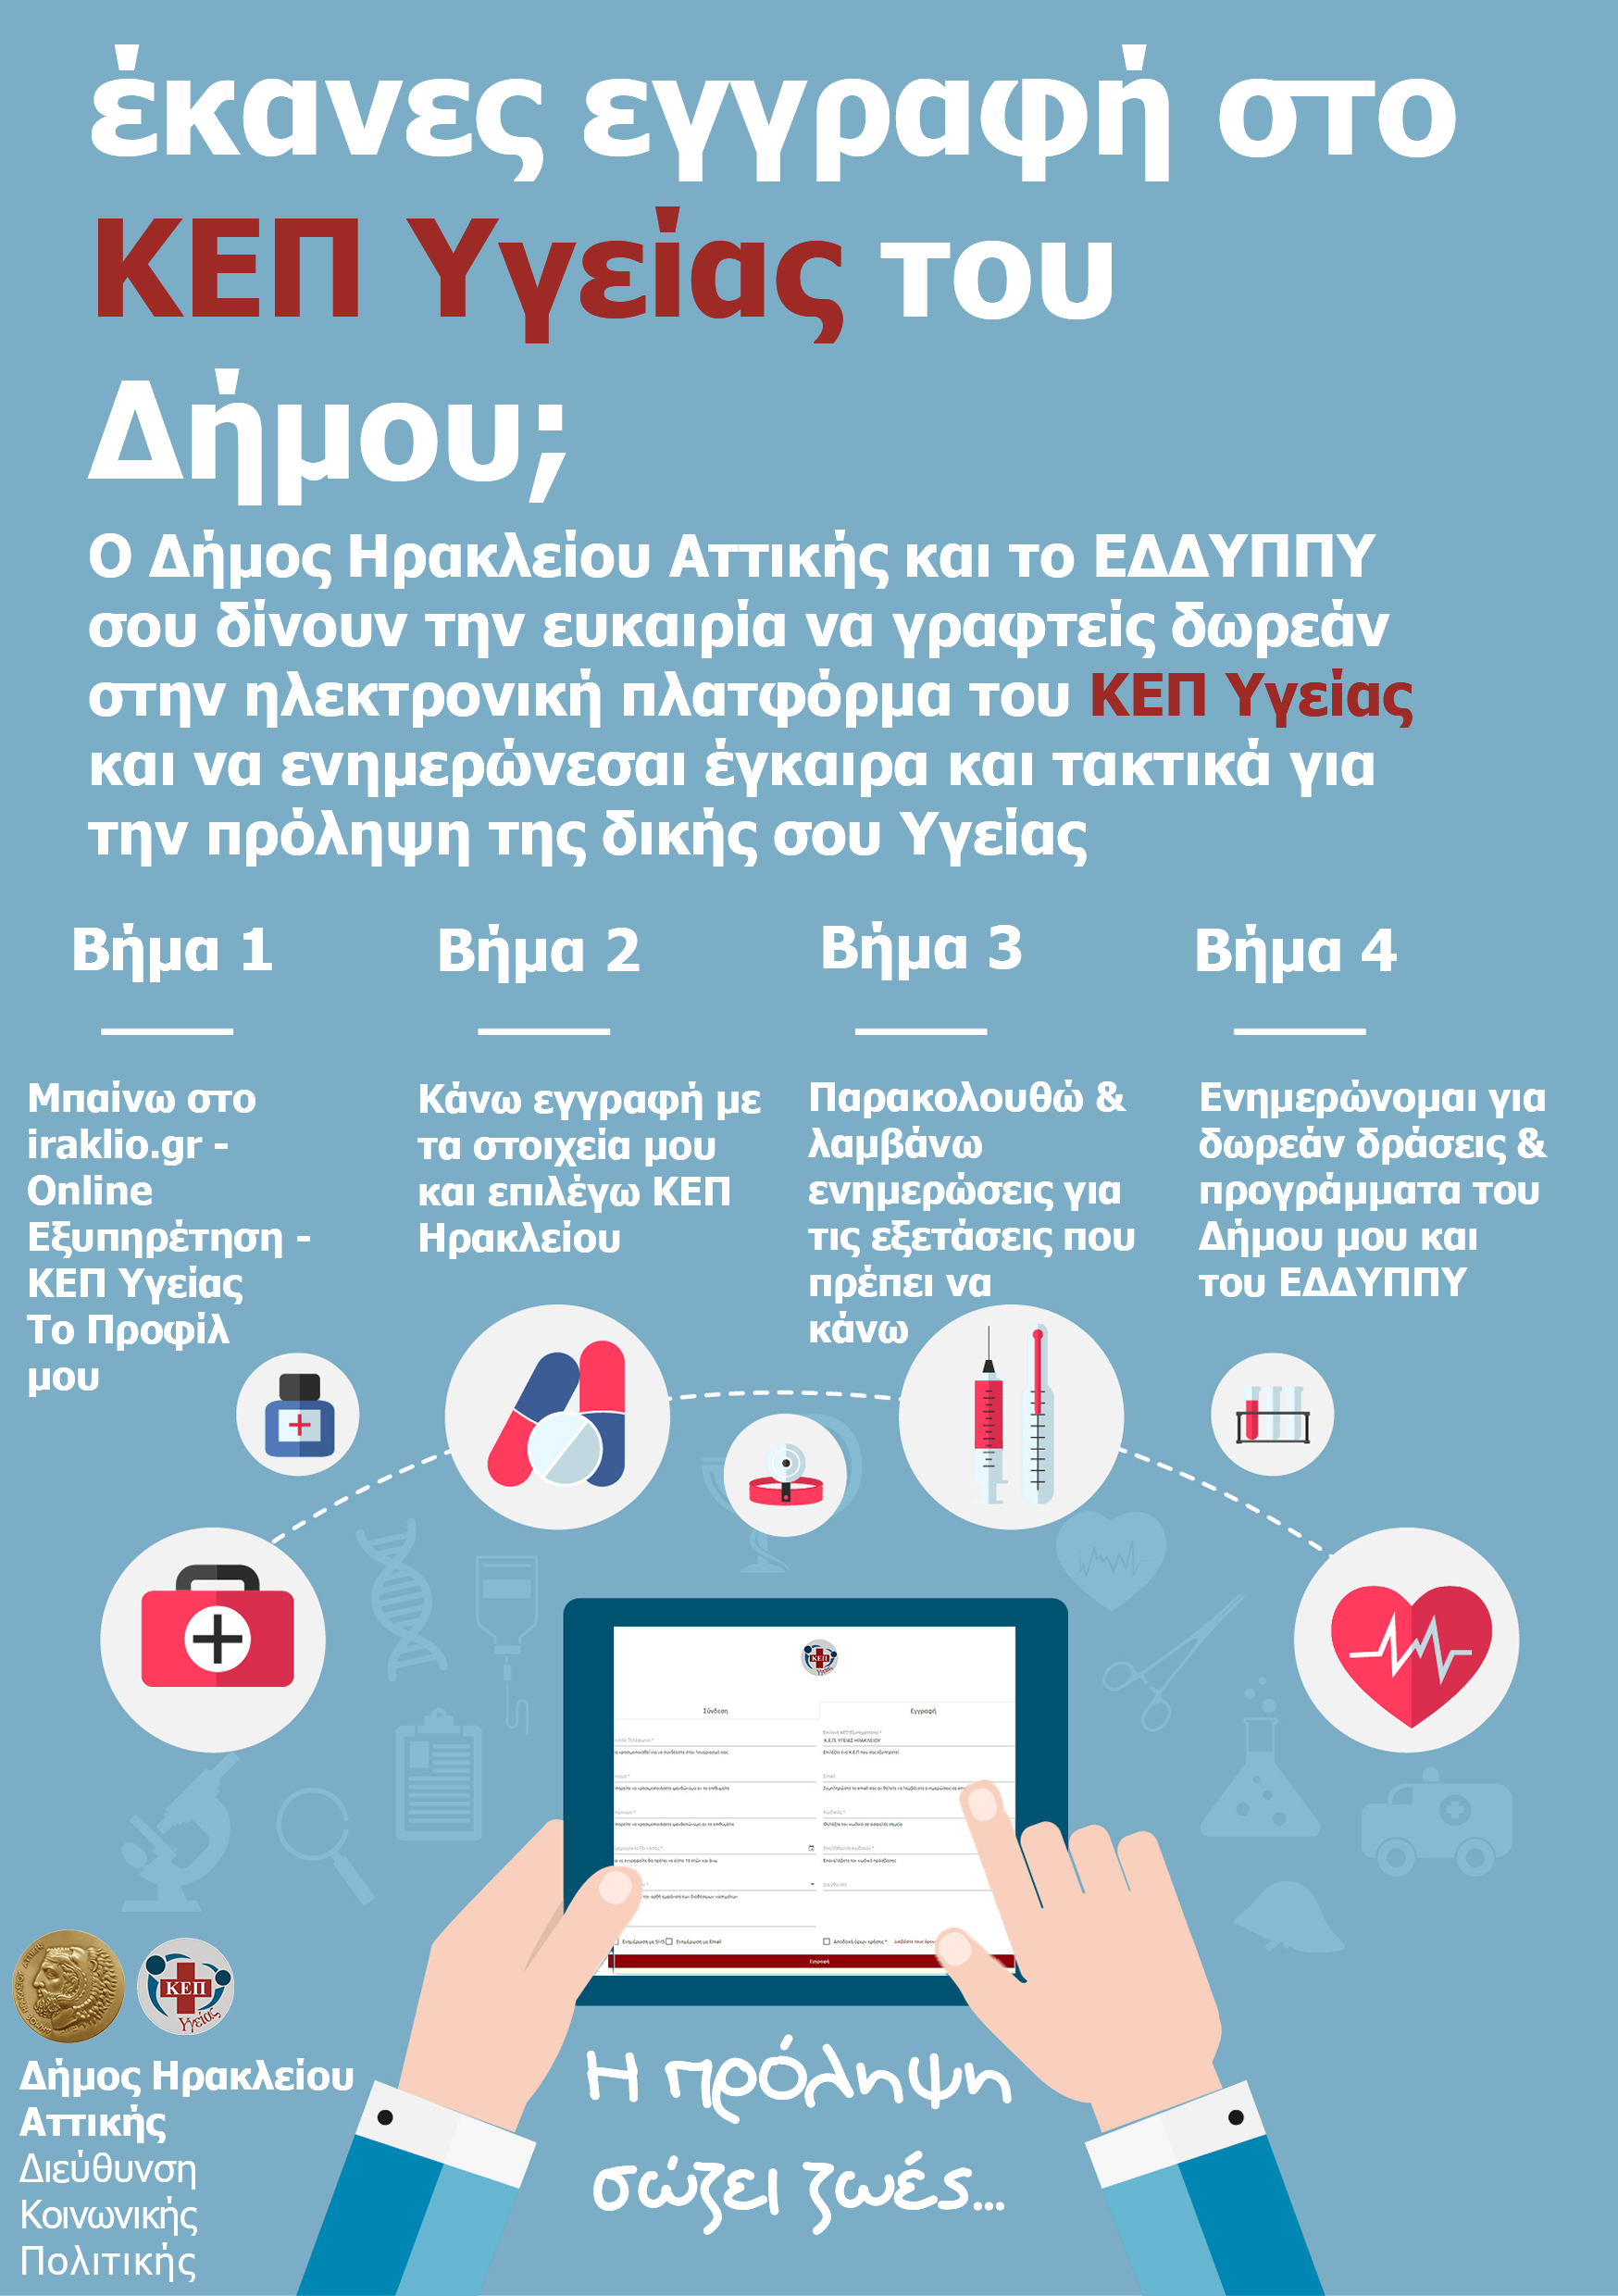 Ένα facebook για την Υγεία μας. Online προφίλ στο ΚΕΠ Υγείας του Δήμου Ηρακλείου Αττικής μπορούν να κάνουν οι πολίτες